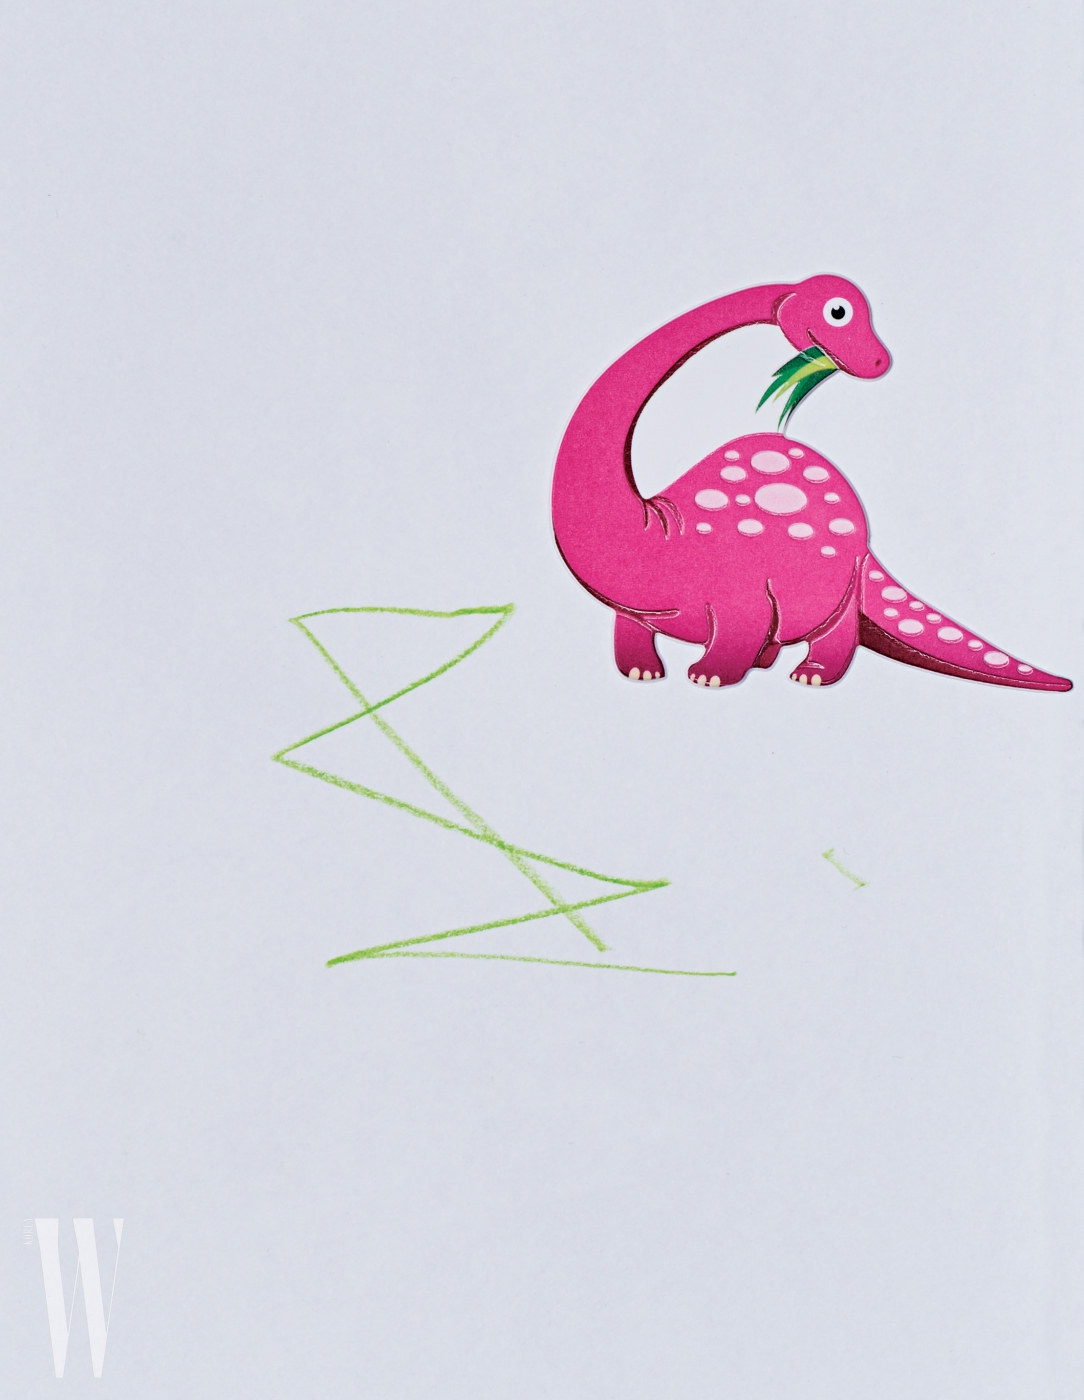 김나영의 아들 최신우(2세) 군이 그린 그림. 엄마가 붙여준 핑크색 공룡 스티커와 어우러지는 추상적인 선을 그려 넣었다. 